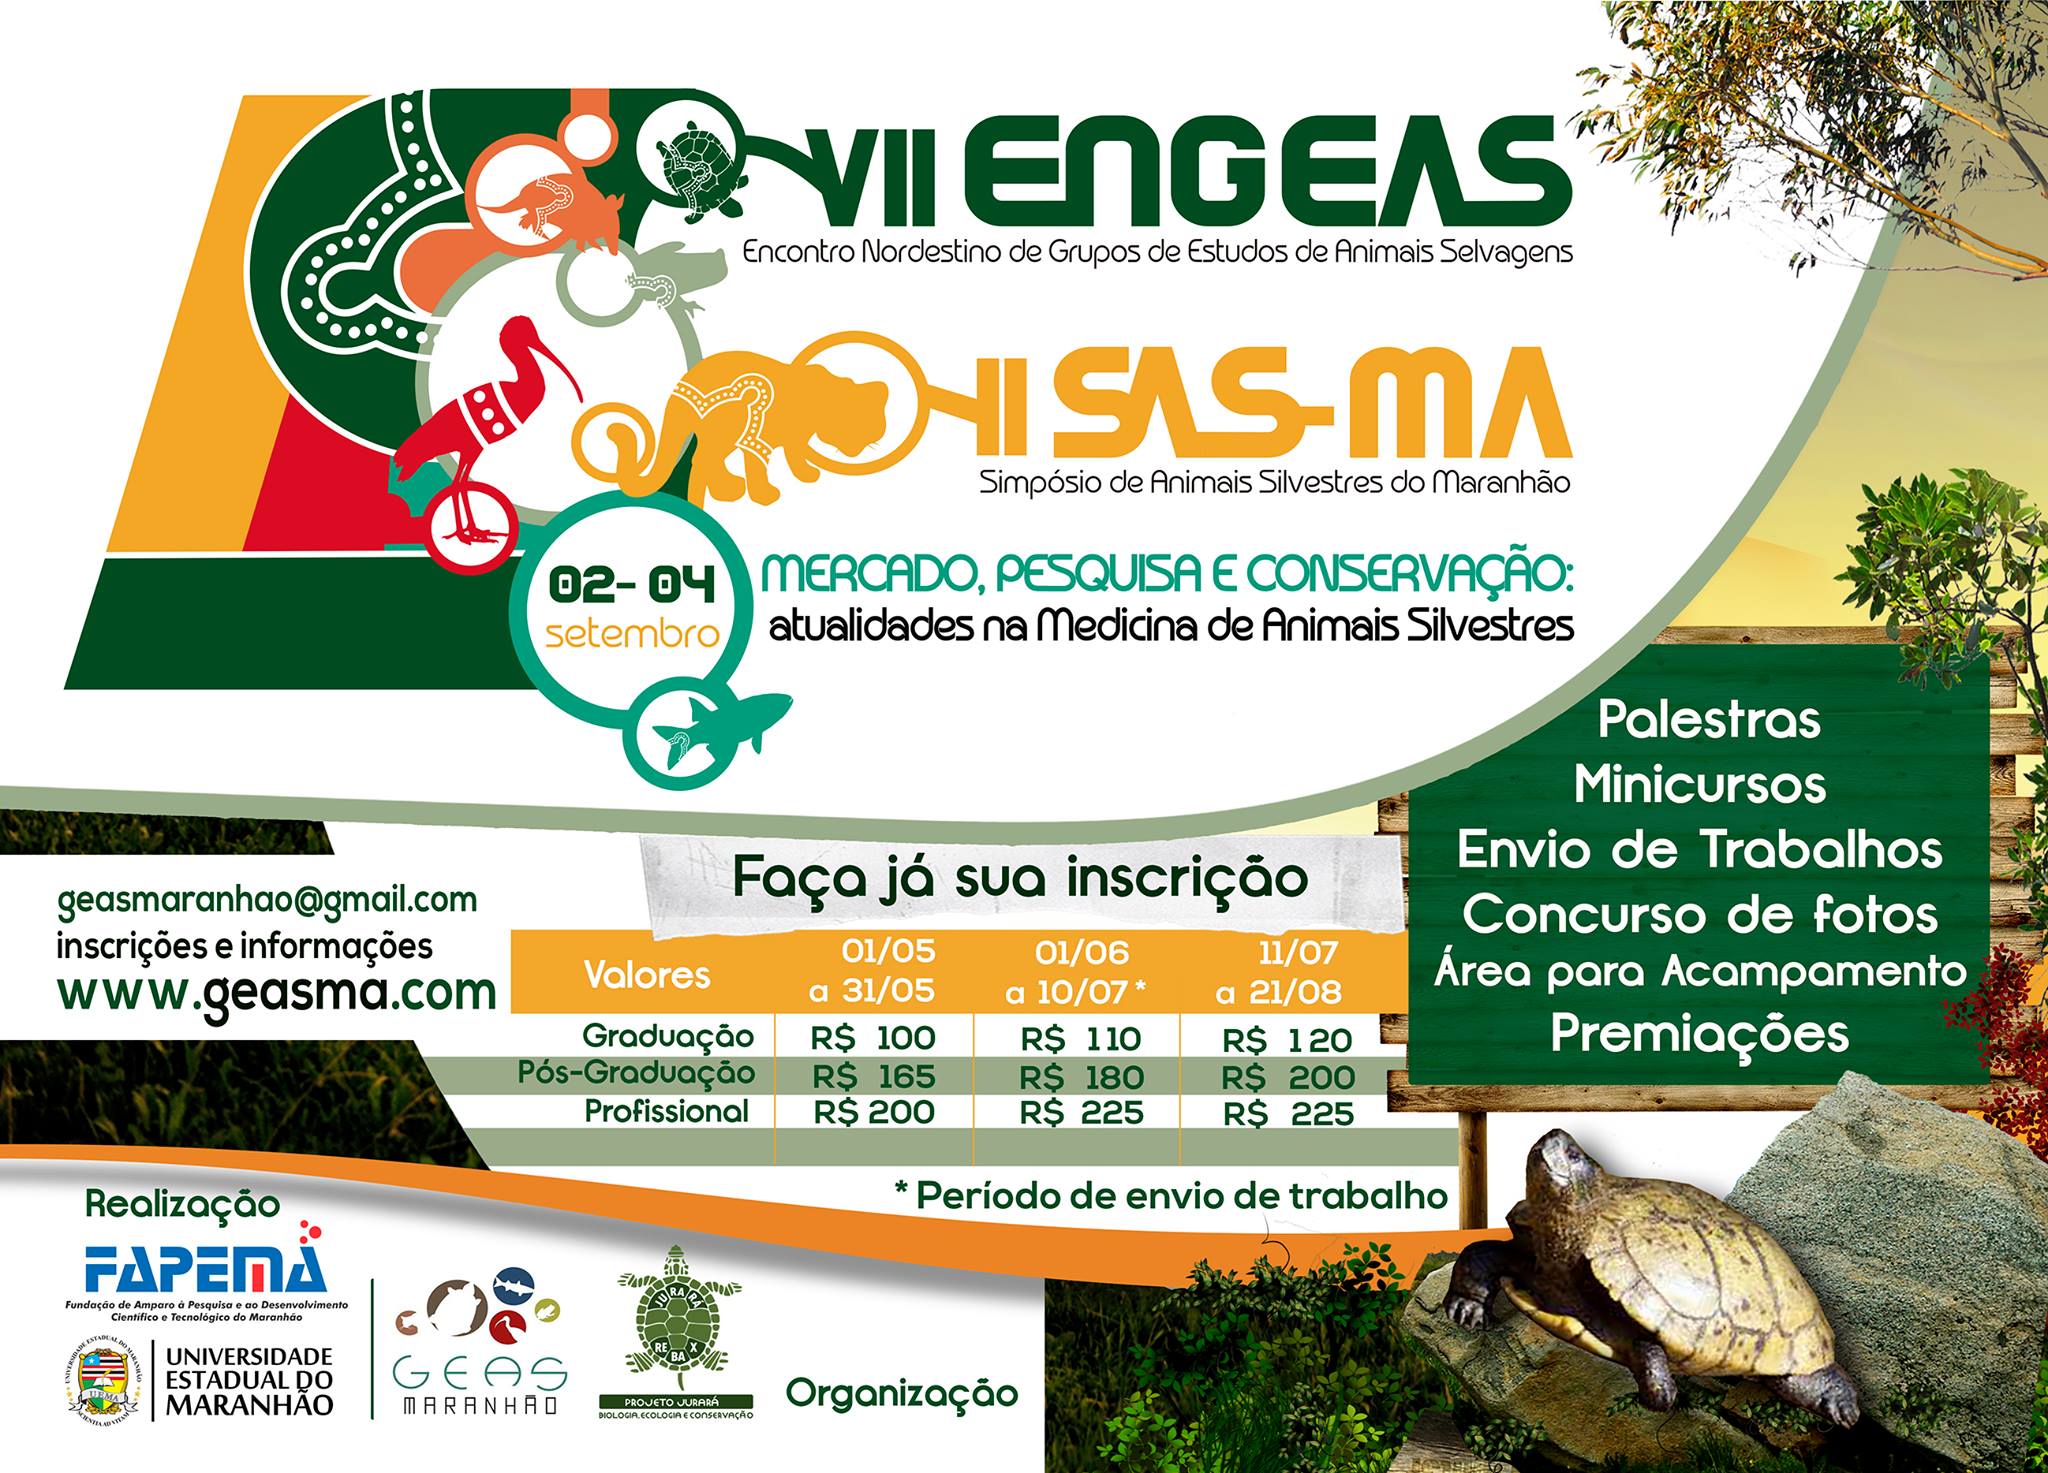 UEMA sediará Encontro Nordestino de Grupos de Estudo de Animais Selvagens e Simpósio de Animais Silvestres do Maranhão